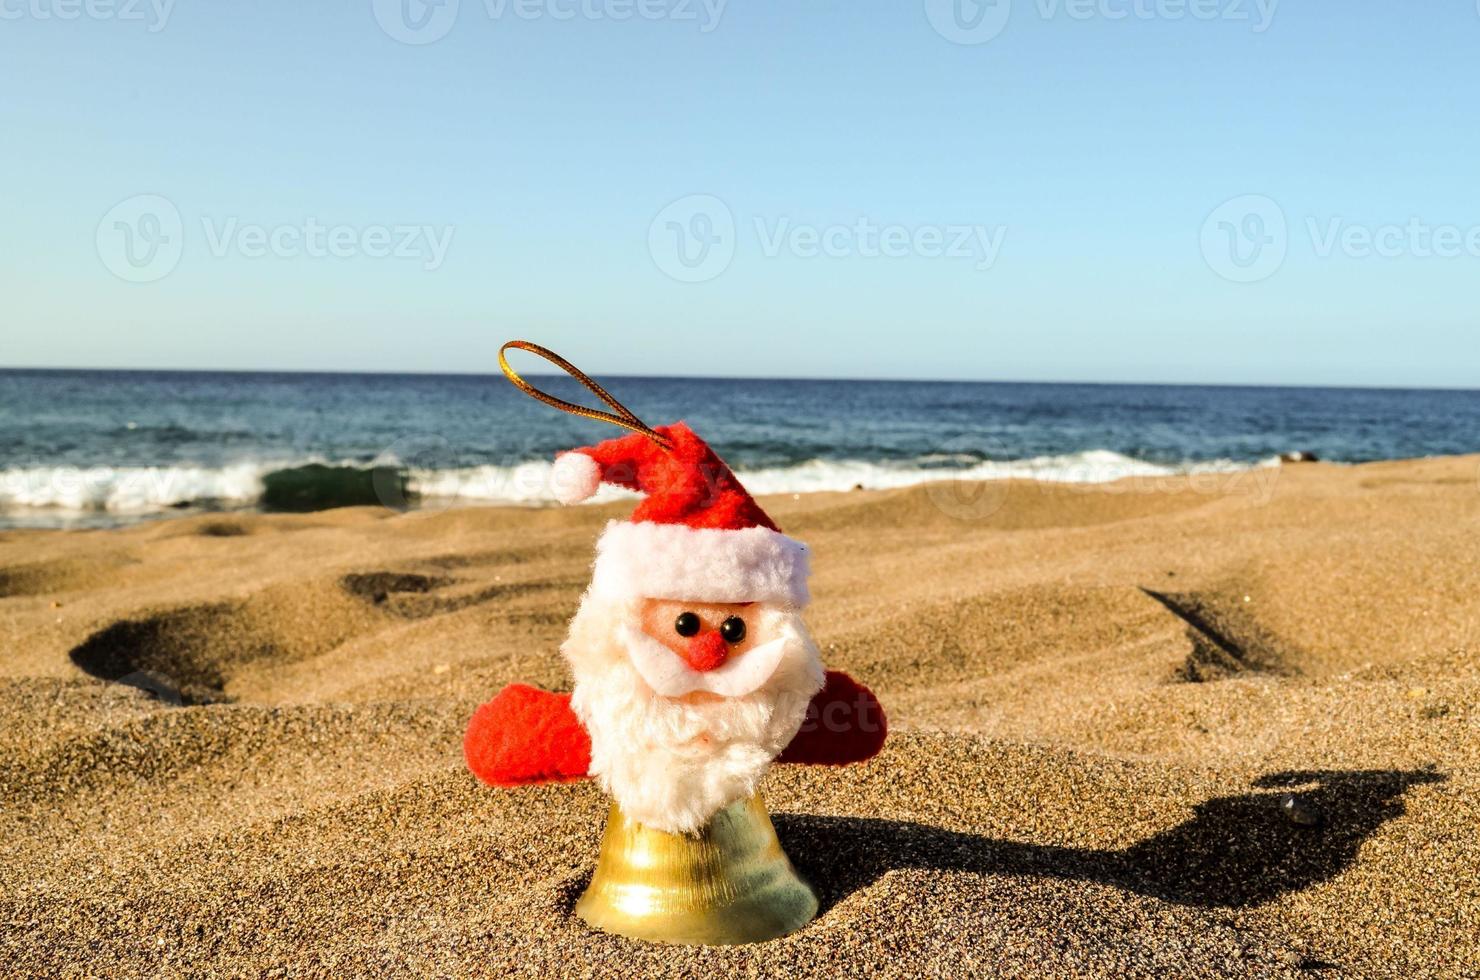 Christmas ornament on the beach photo